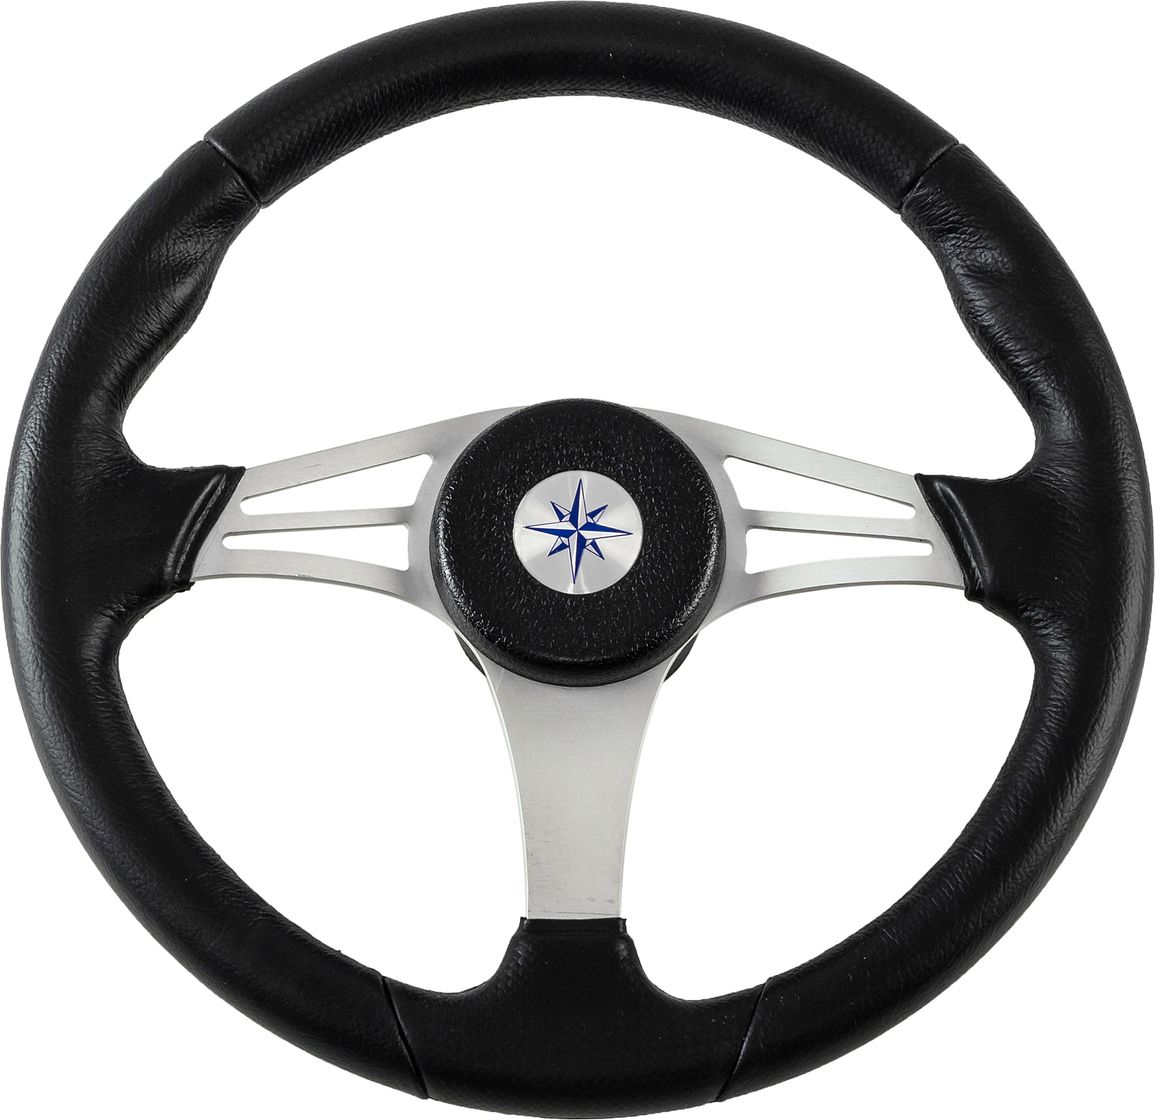 Рулевое колесо ENDURANCE обод черный, спицы серебряные д. 350 мм VN13511-01 рулевое колесо lipari обод спицы серебряные д 280 мм vn828022 01